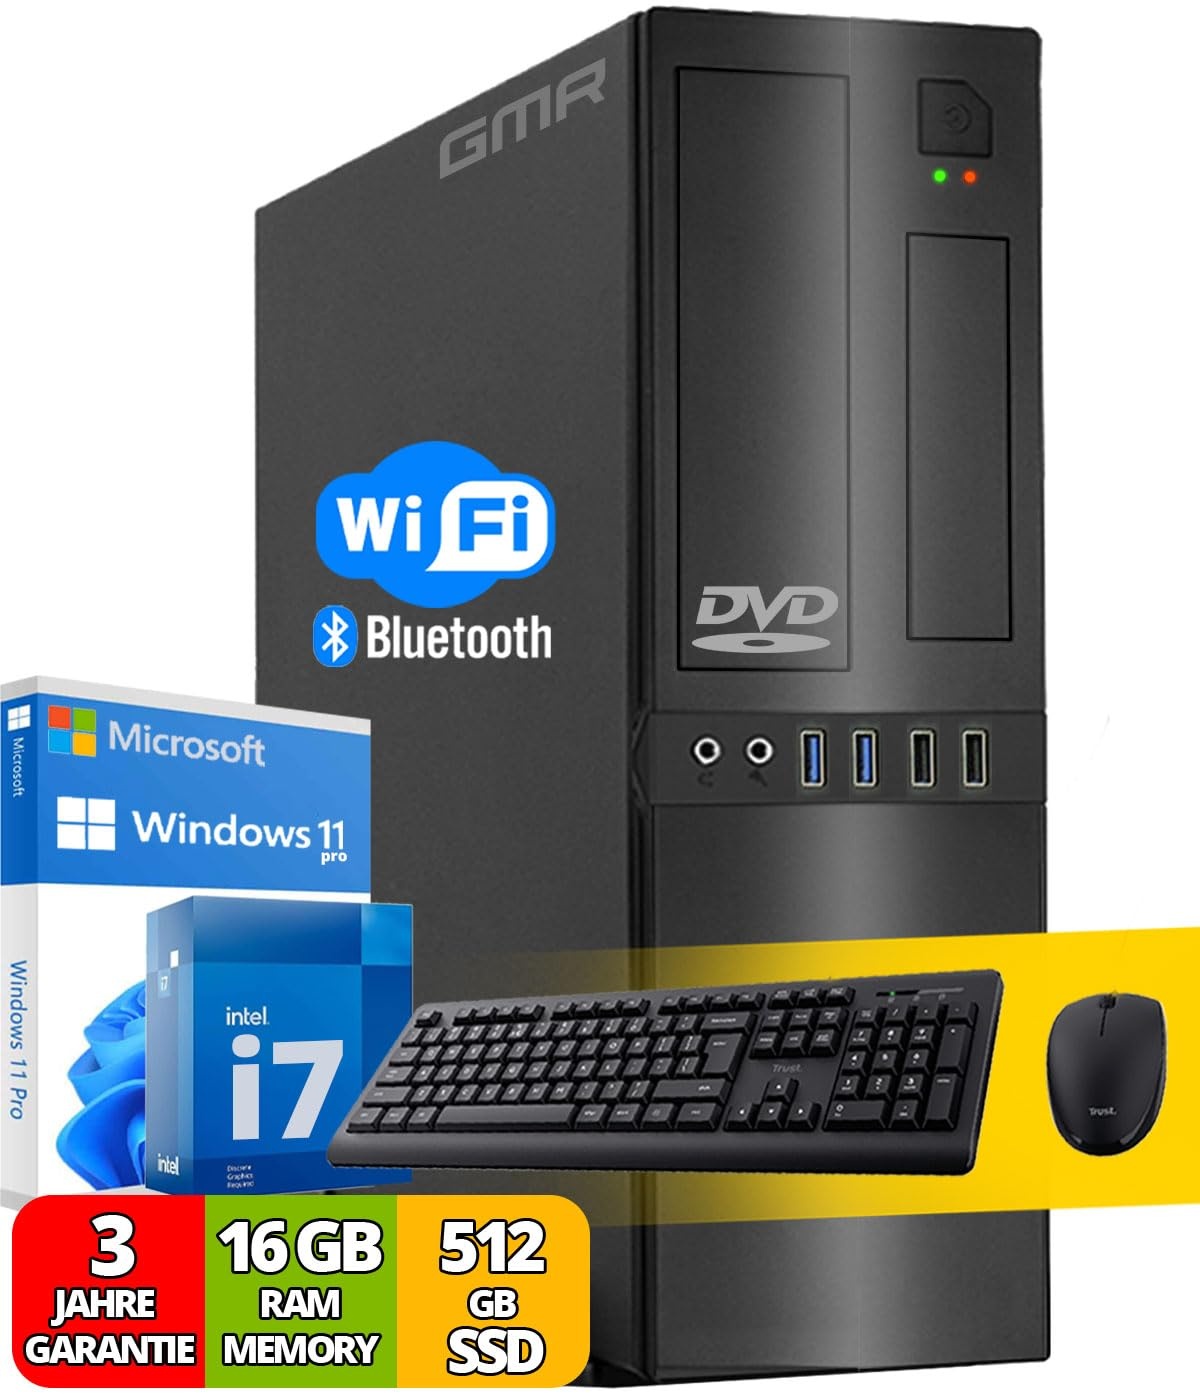 Intel Office PC Komplett mit Tastatur und Maus | Intel i7 | 16 GB RAM | 512 GB SSD | DVD-Brenner | WiFi 600 und Bluetooth 5 | USB3 | Windows 11 Pro | 3 Jahren Garantie!